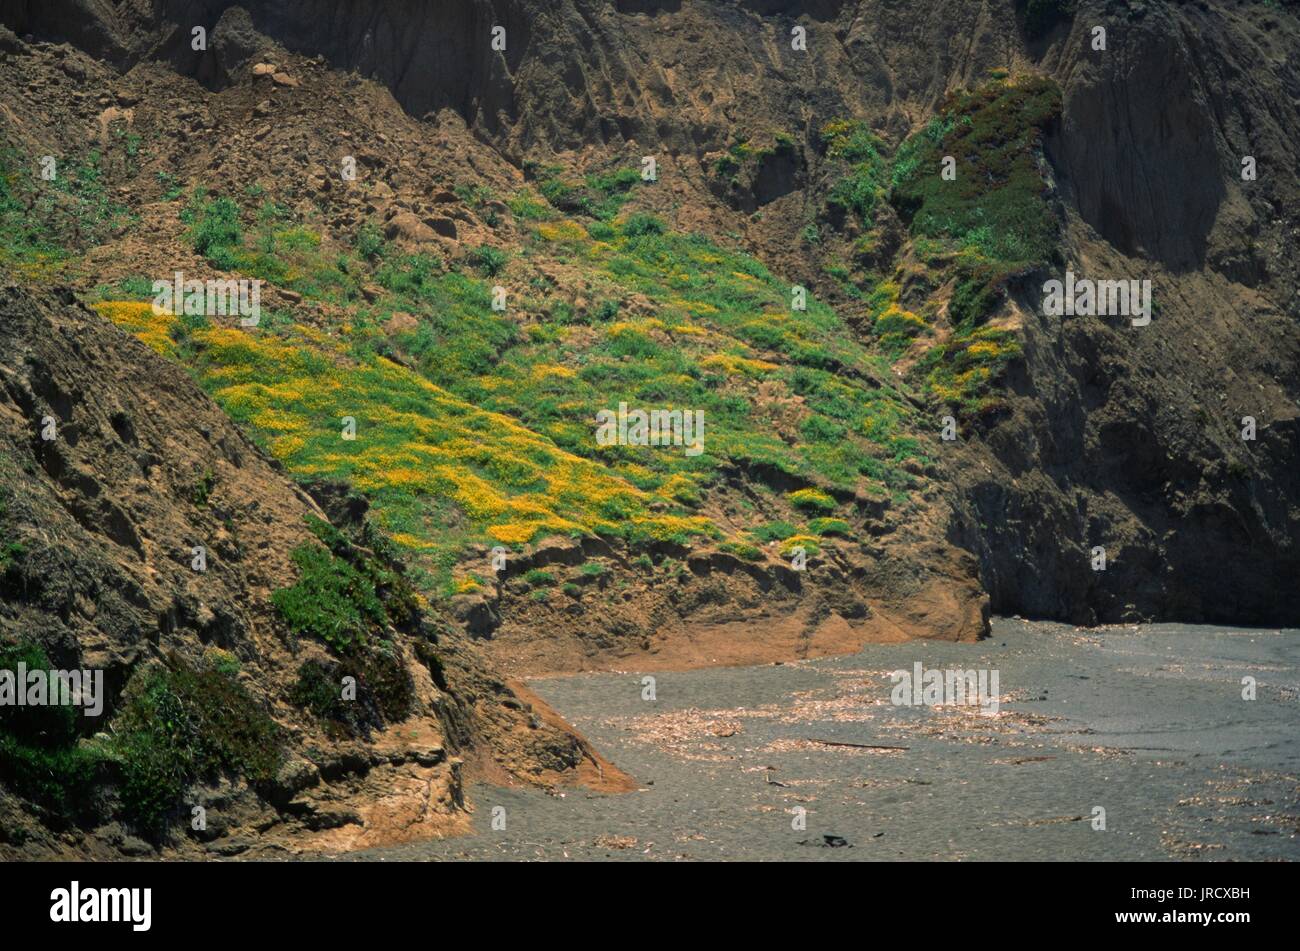 Nahaufnahme von Wildblumen, darunter die berühmten gelben Senfpflanzen Kaliforniens, die in der Nähe des Strandes von Mori Point, Teil des Golden Gate National Recreation Area in Pacifica, Kalifornien, am 20. Juni 2017 wachsen. Stockfoto